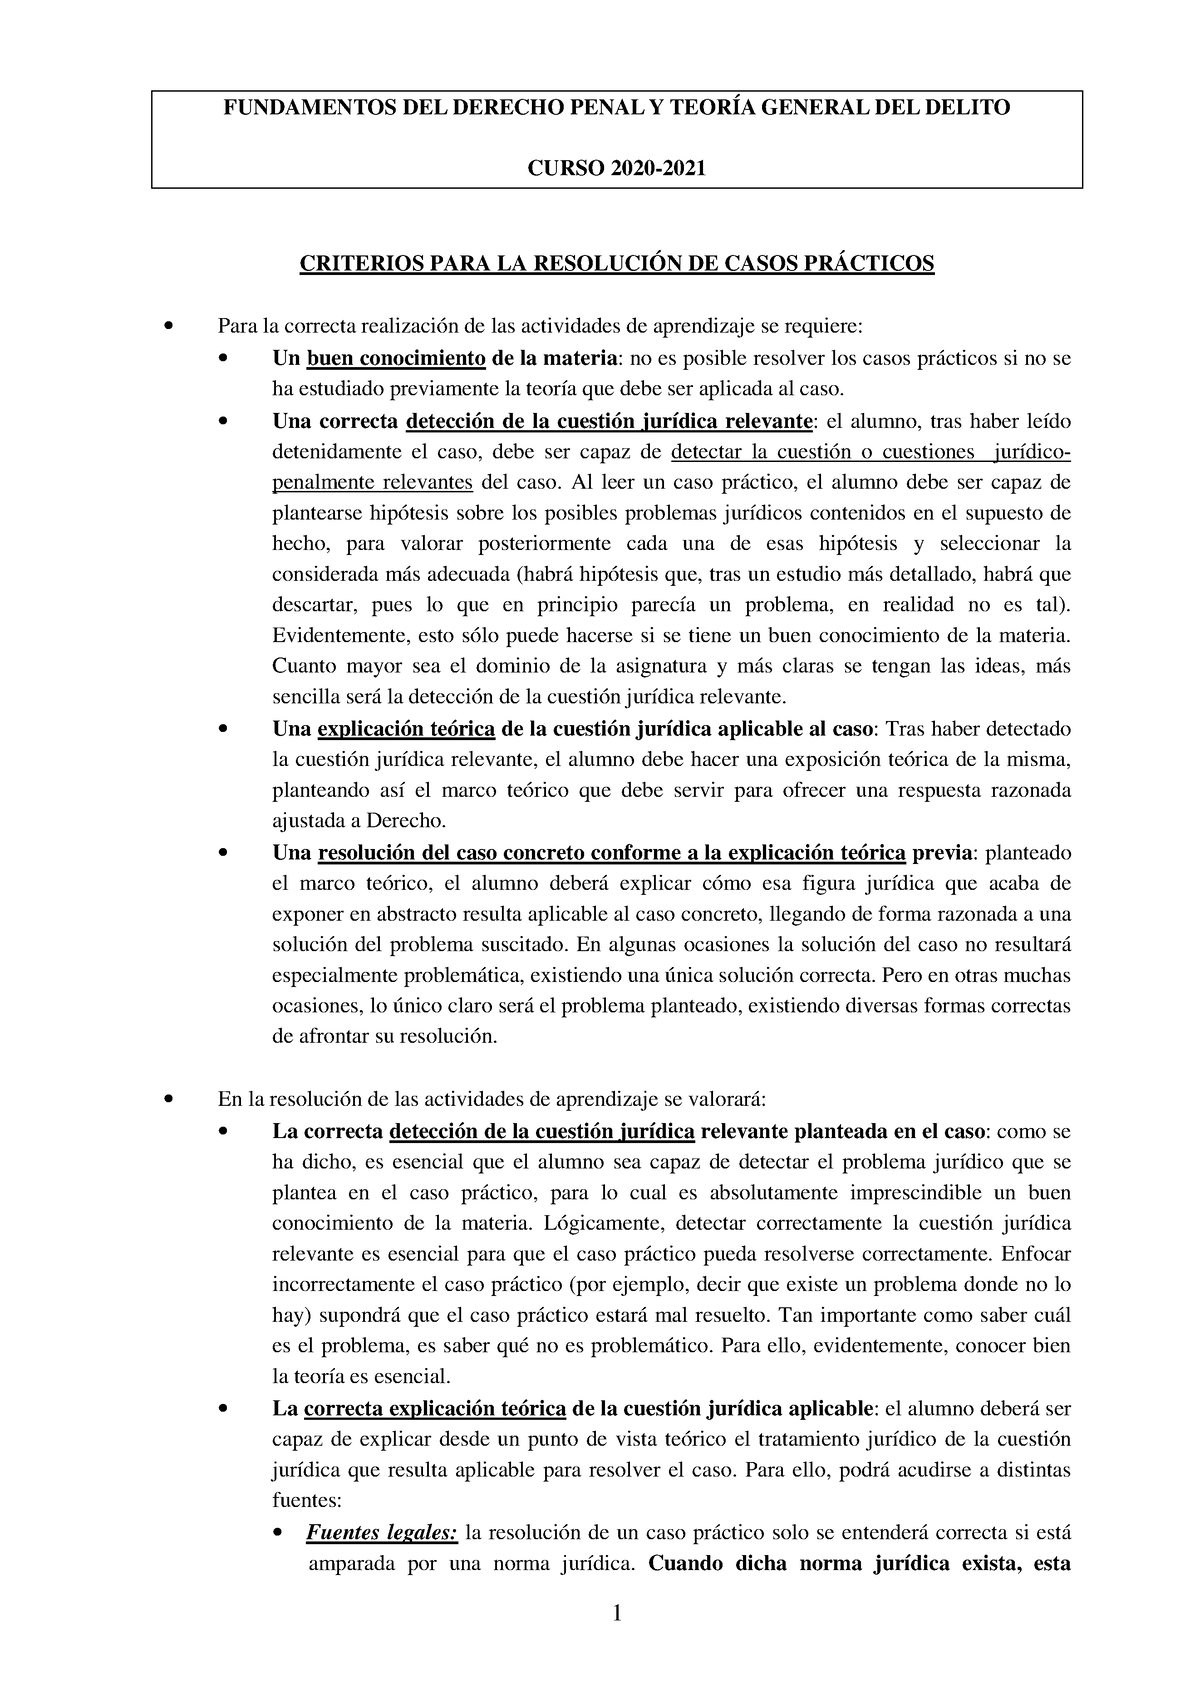 Técnica De Resolución De Casos Prácticos Fundamentos Del Derecho Penal Y TeorÍa General Del 6828